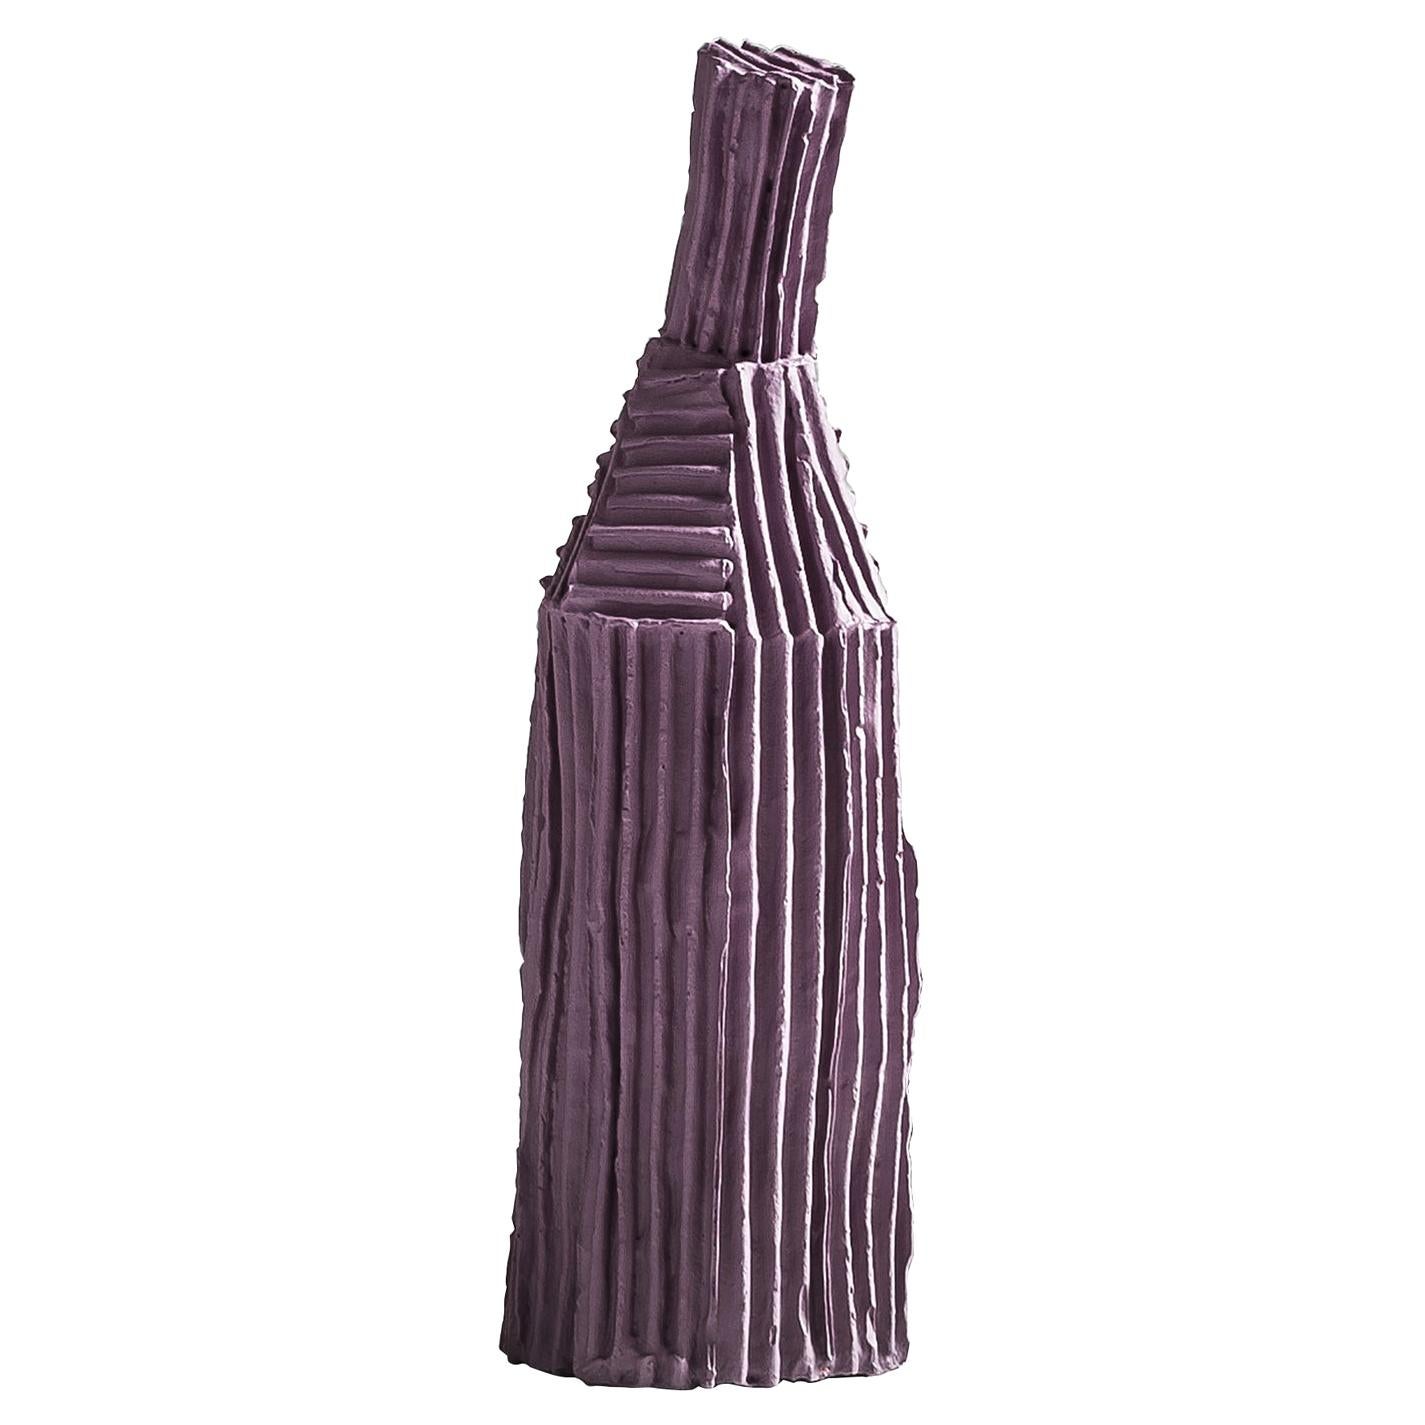 Contemporary Ceramic Cartocci Lilac Decorative Bottle Corteccia Texture For Sale